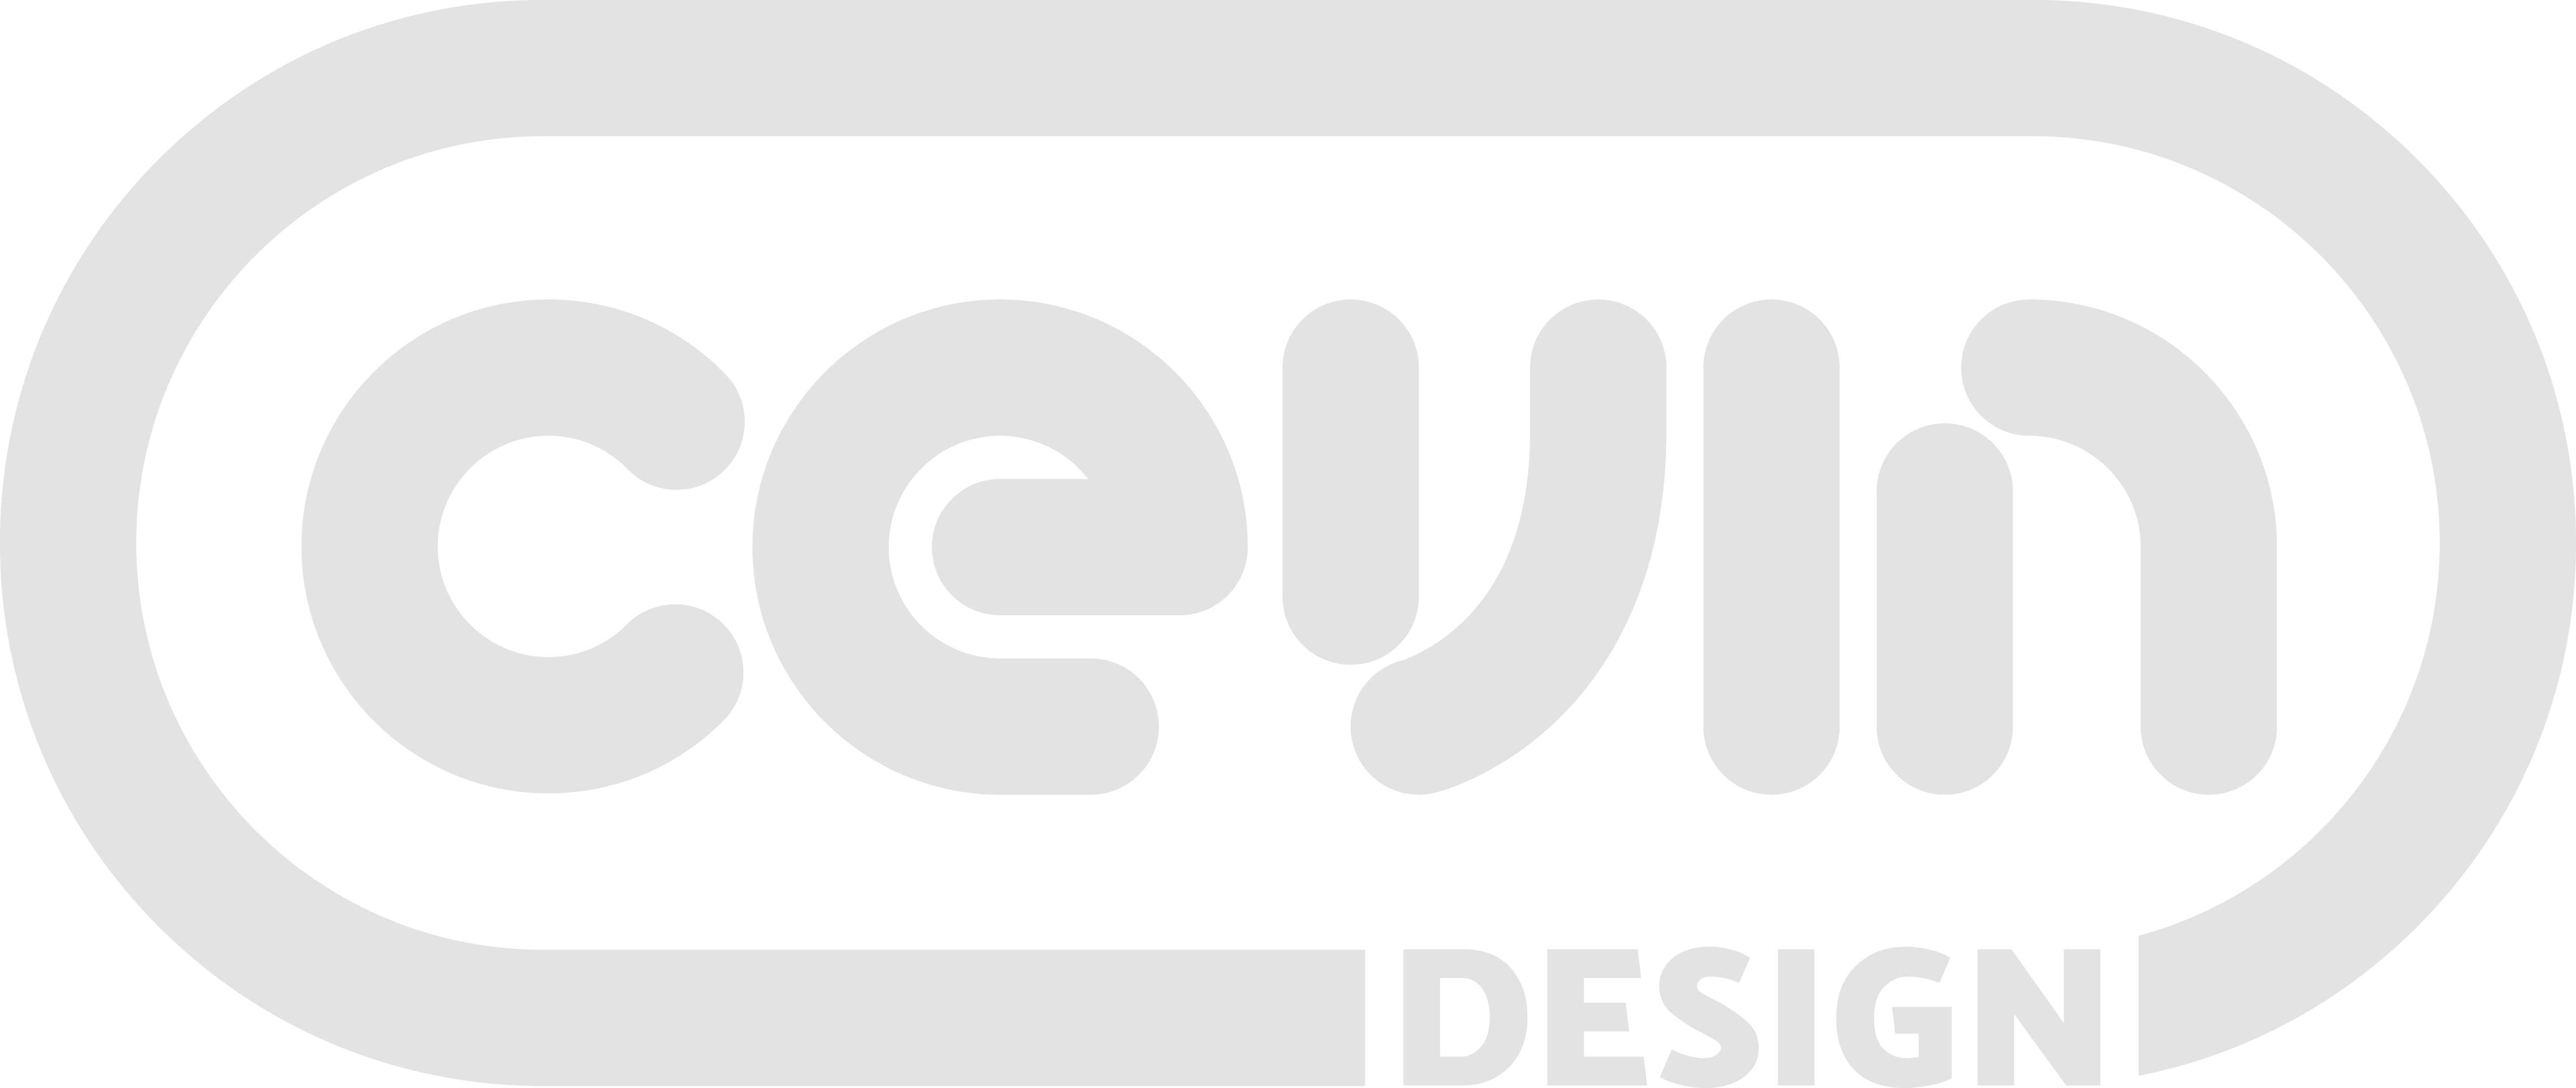 Cevin Design